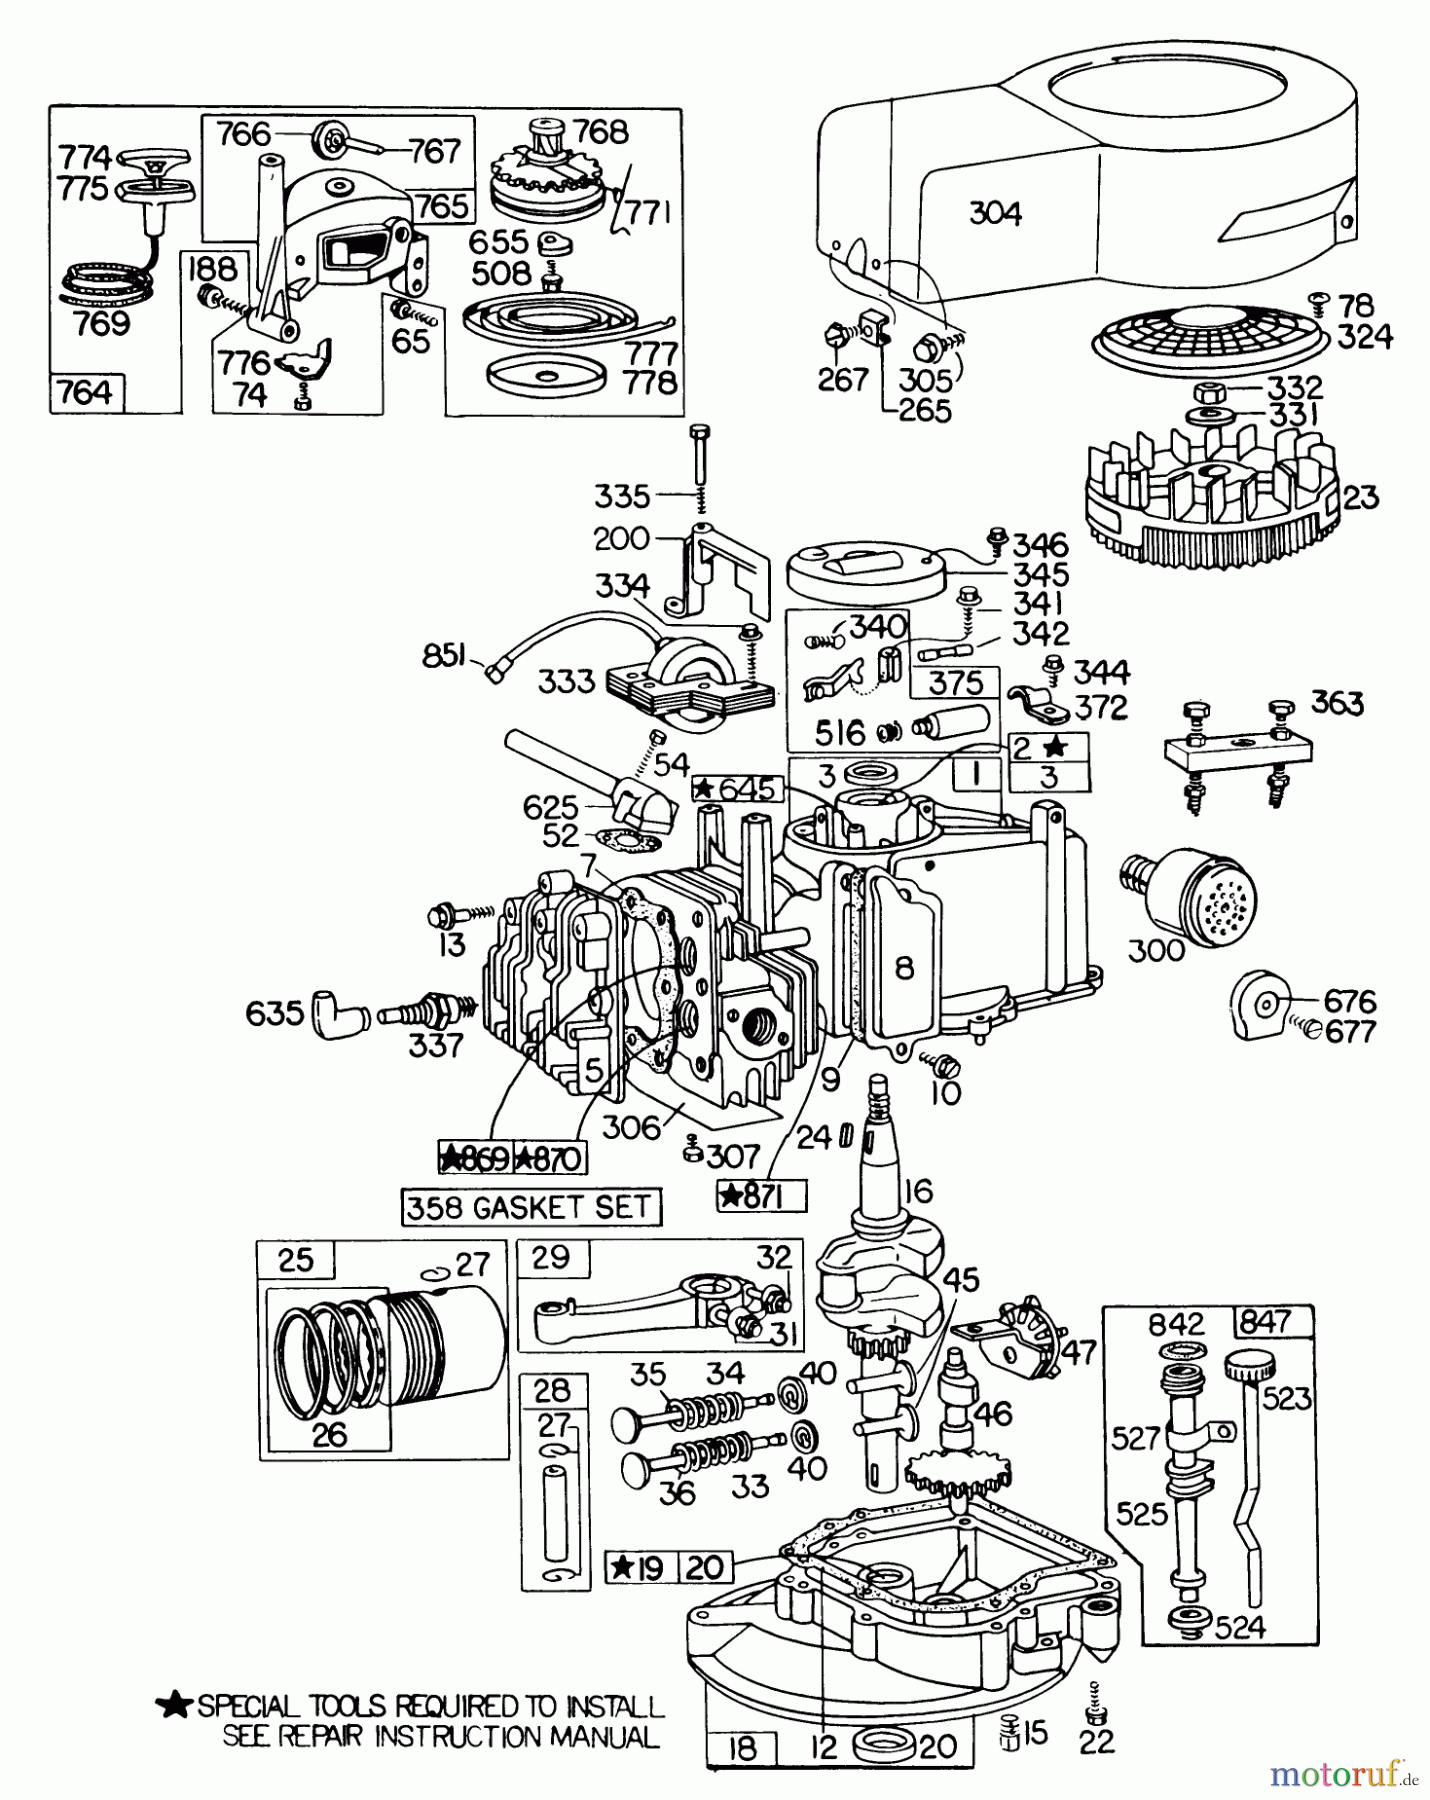  Toro Neu Mowers, Walk-Behind Seite 1 20785 - Toro Lawnmower, 1980 (0000001-0999999) ENGINE BRIGGS & STRATTON MODEL NO. 110908-0380-02